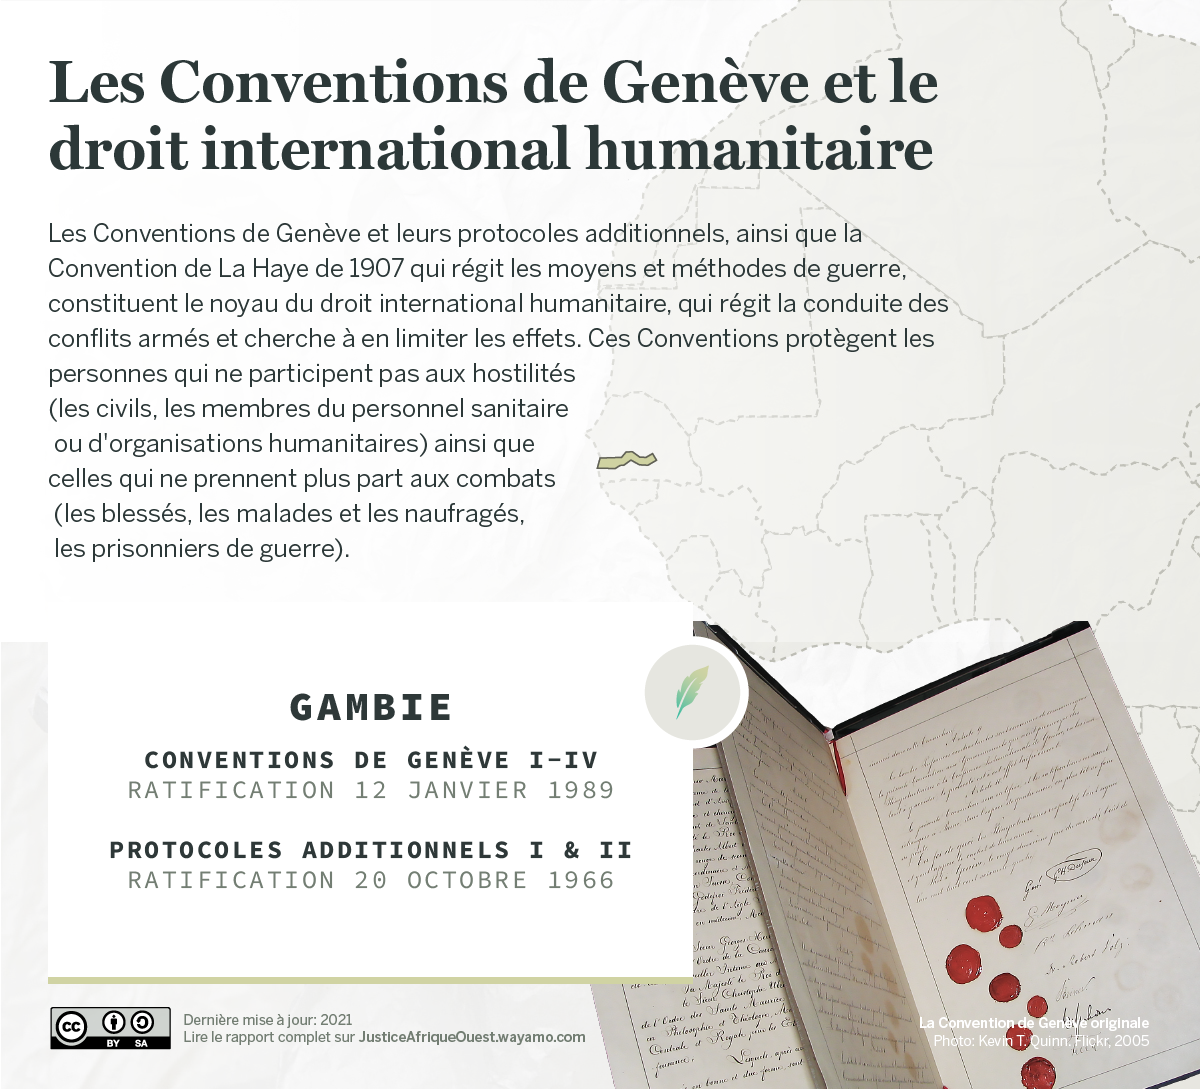 GAMBIE_Conventions de Genève - Wayamo Foundation (CC BY-SA 4.0)